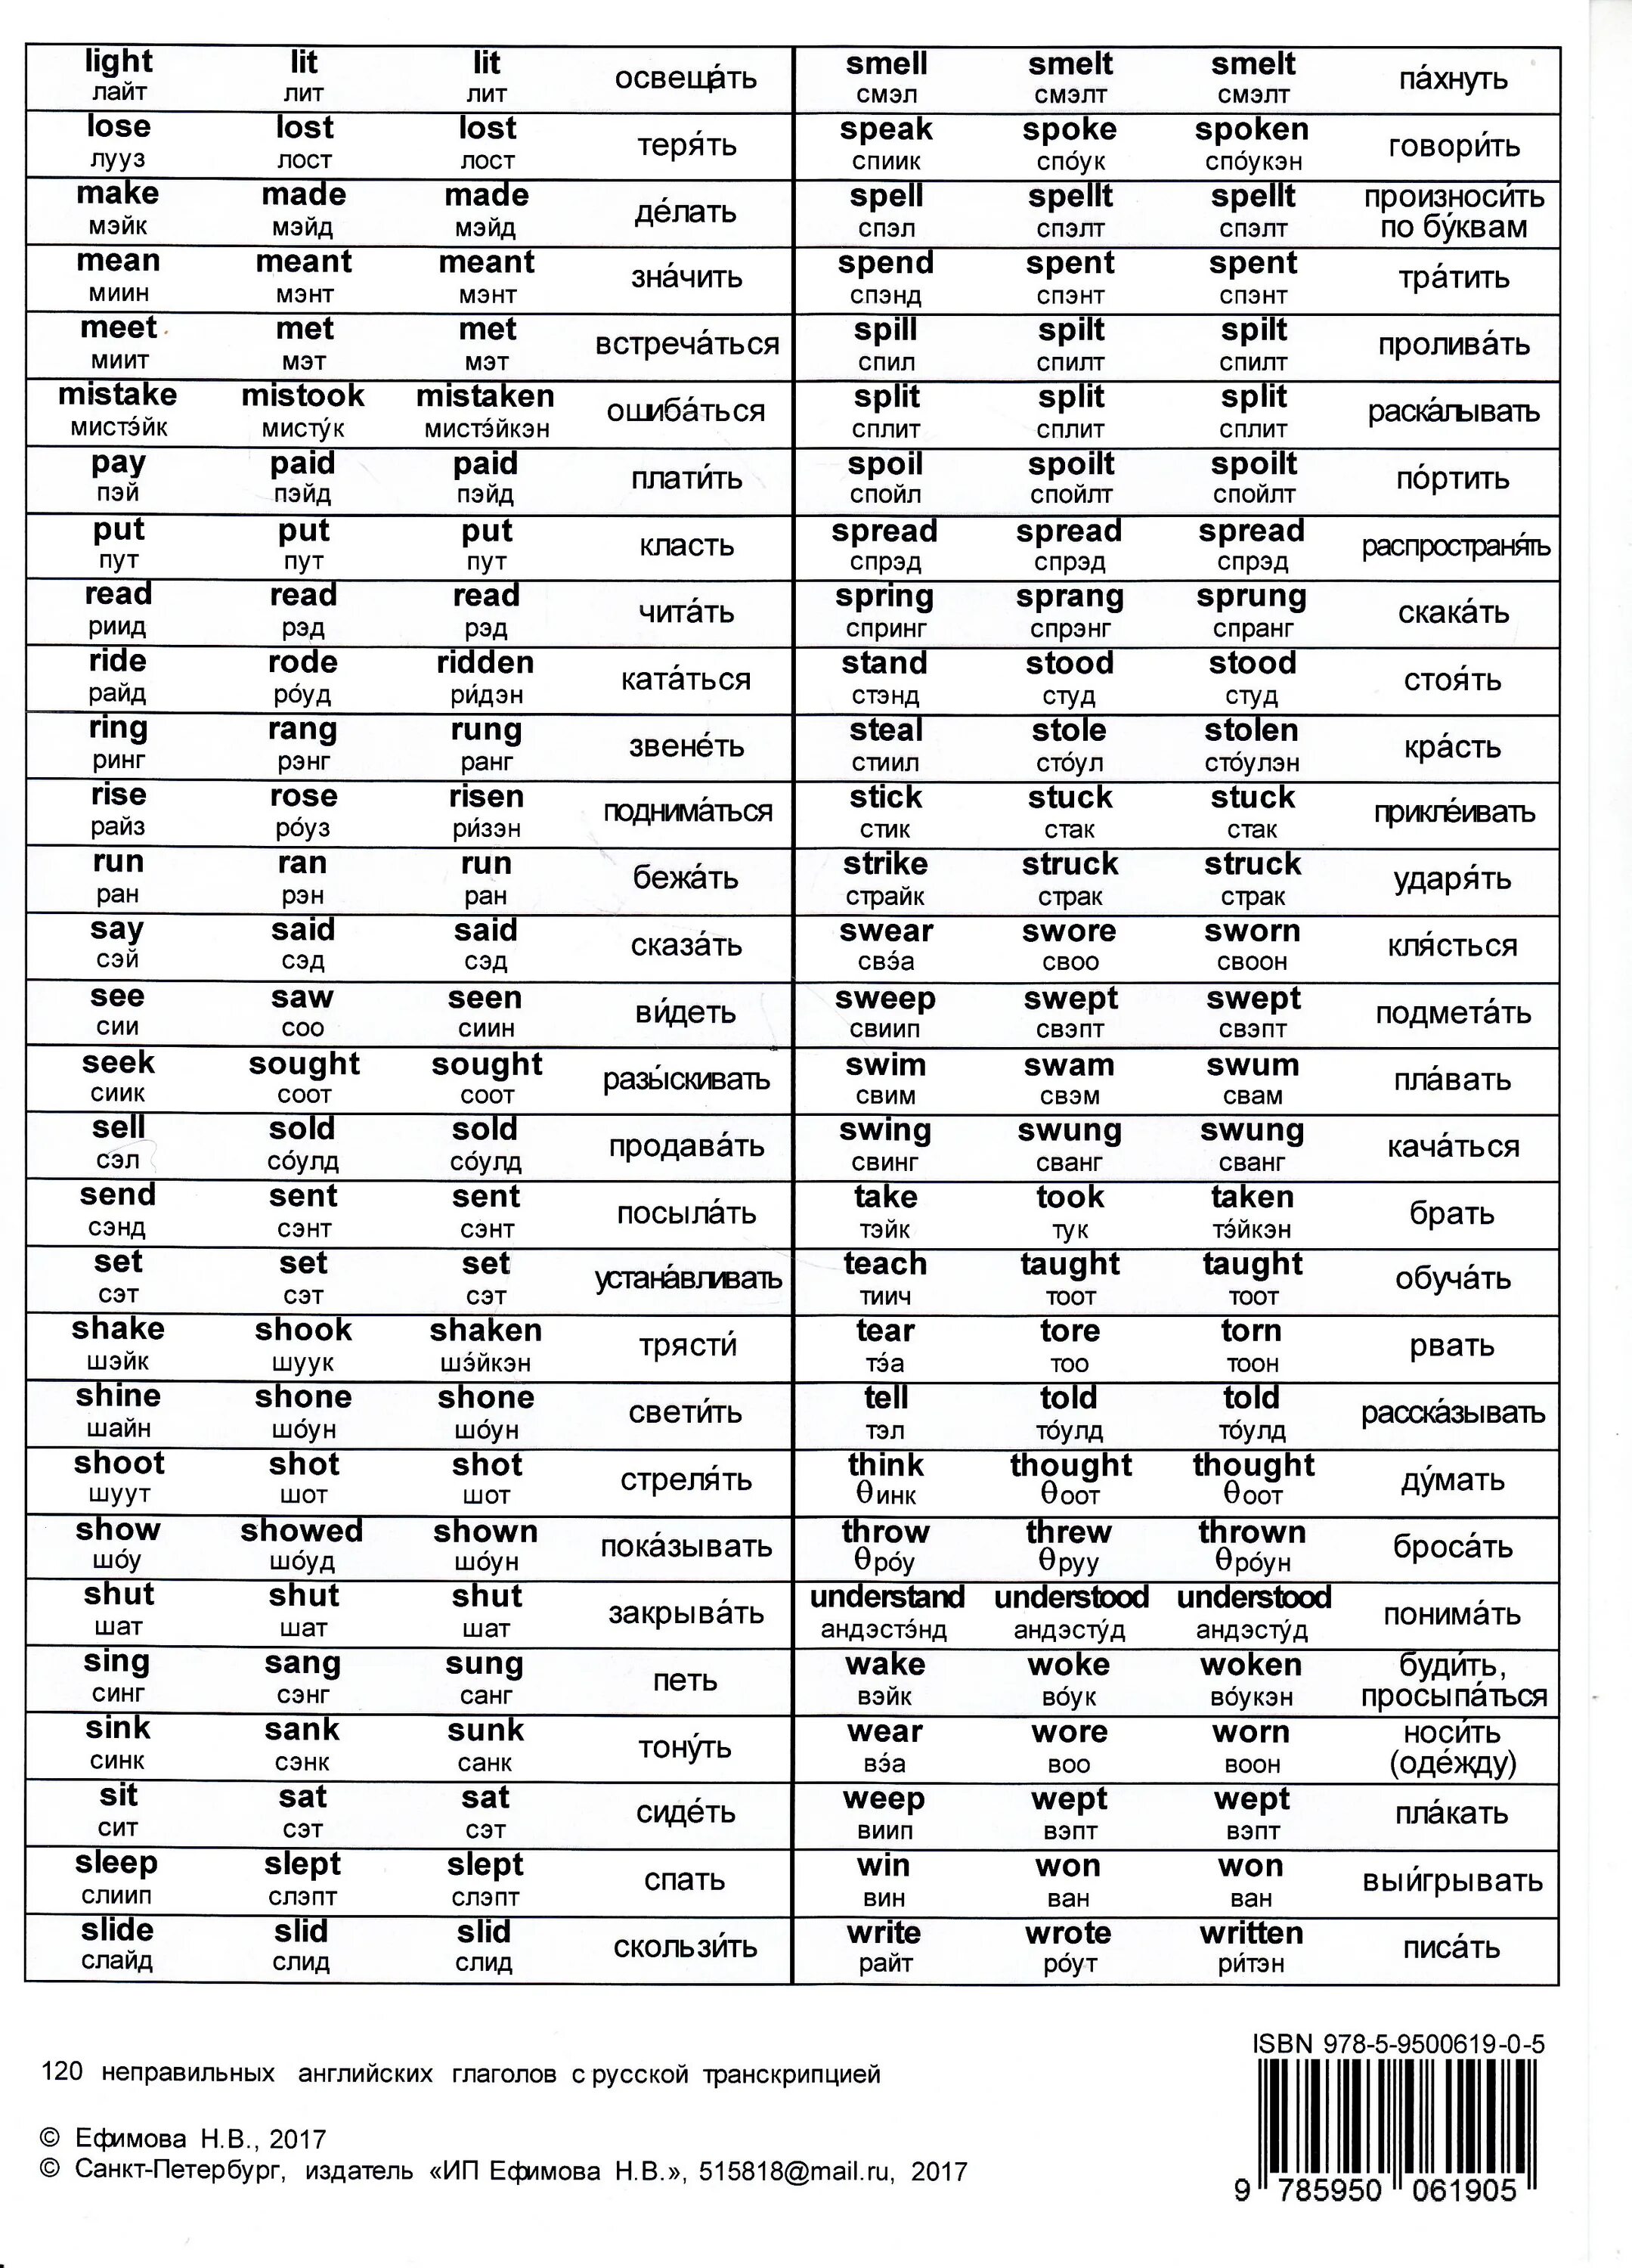 Таблица неправильных глаголов англ. Таблица неправильных глаголов в англ языке. Таблица неправильных глаголов англ с переводом. Таблица неправильных глаголов с транскрипцией и переводом. Английские глаголы на t